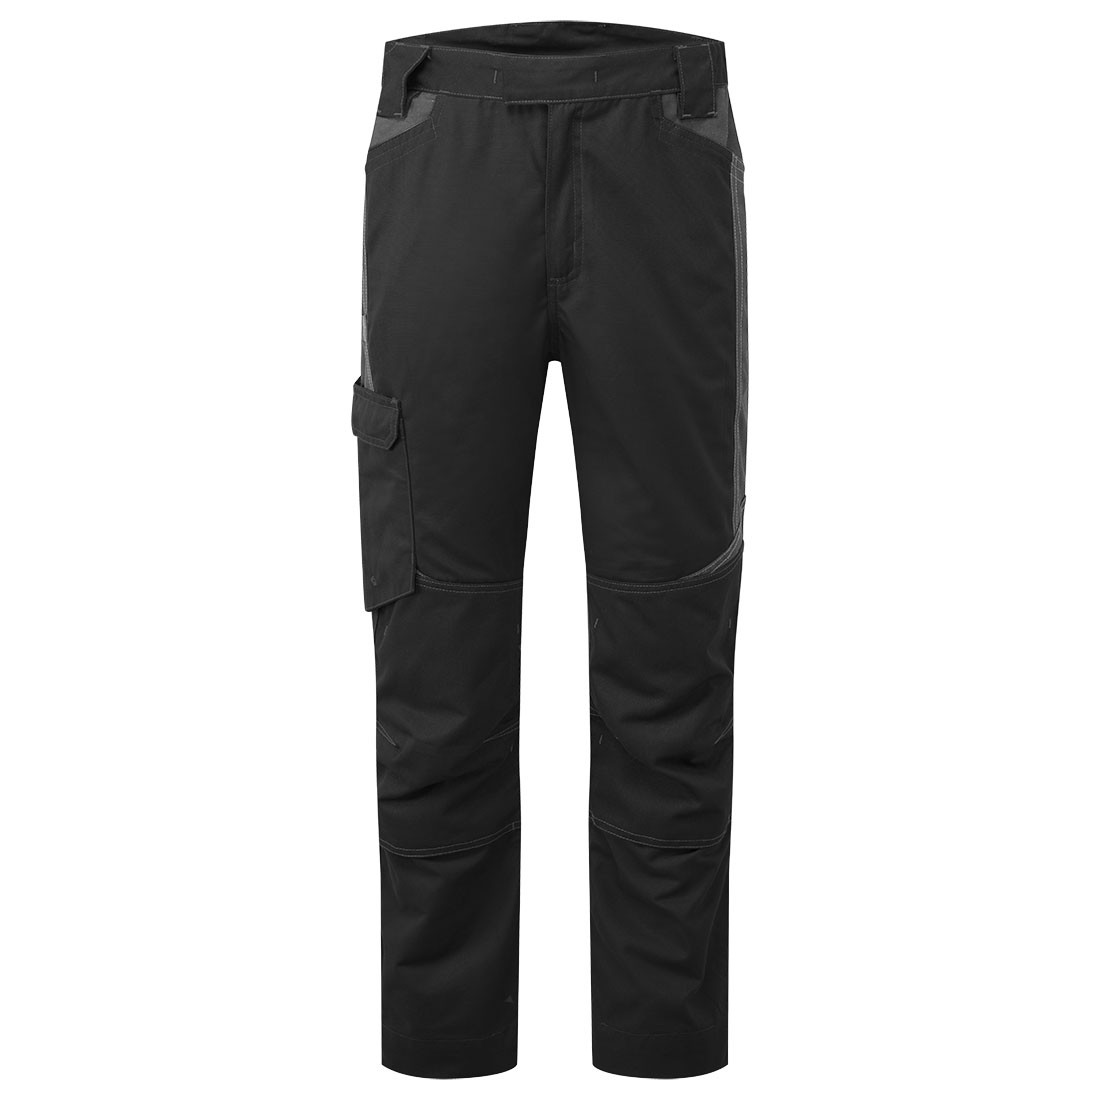 Pantalon Lavage Industriel WX3 - Les vêtements de protection